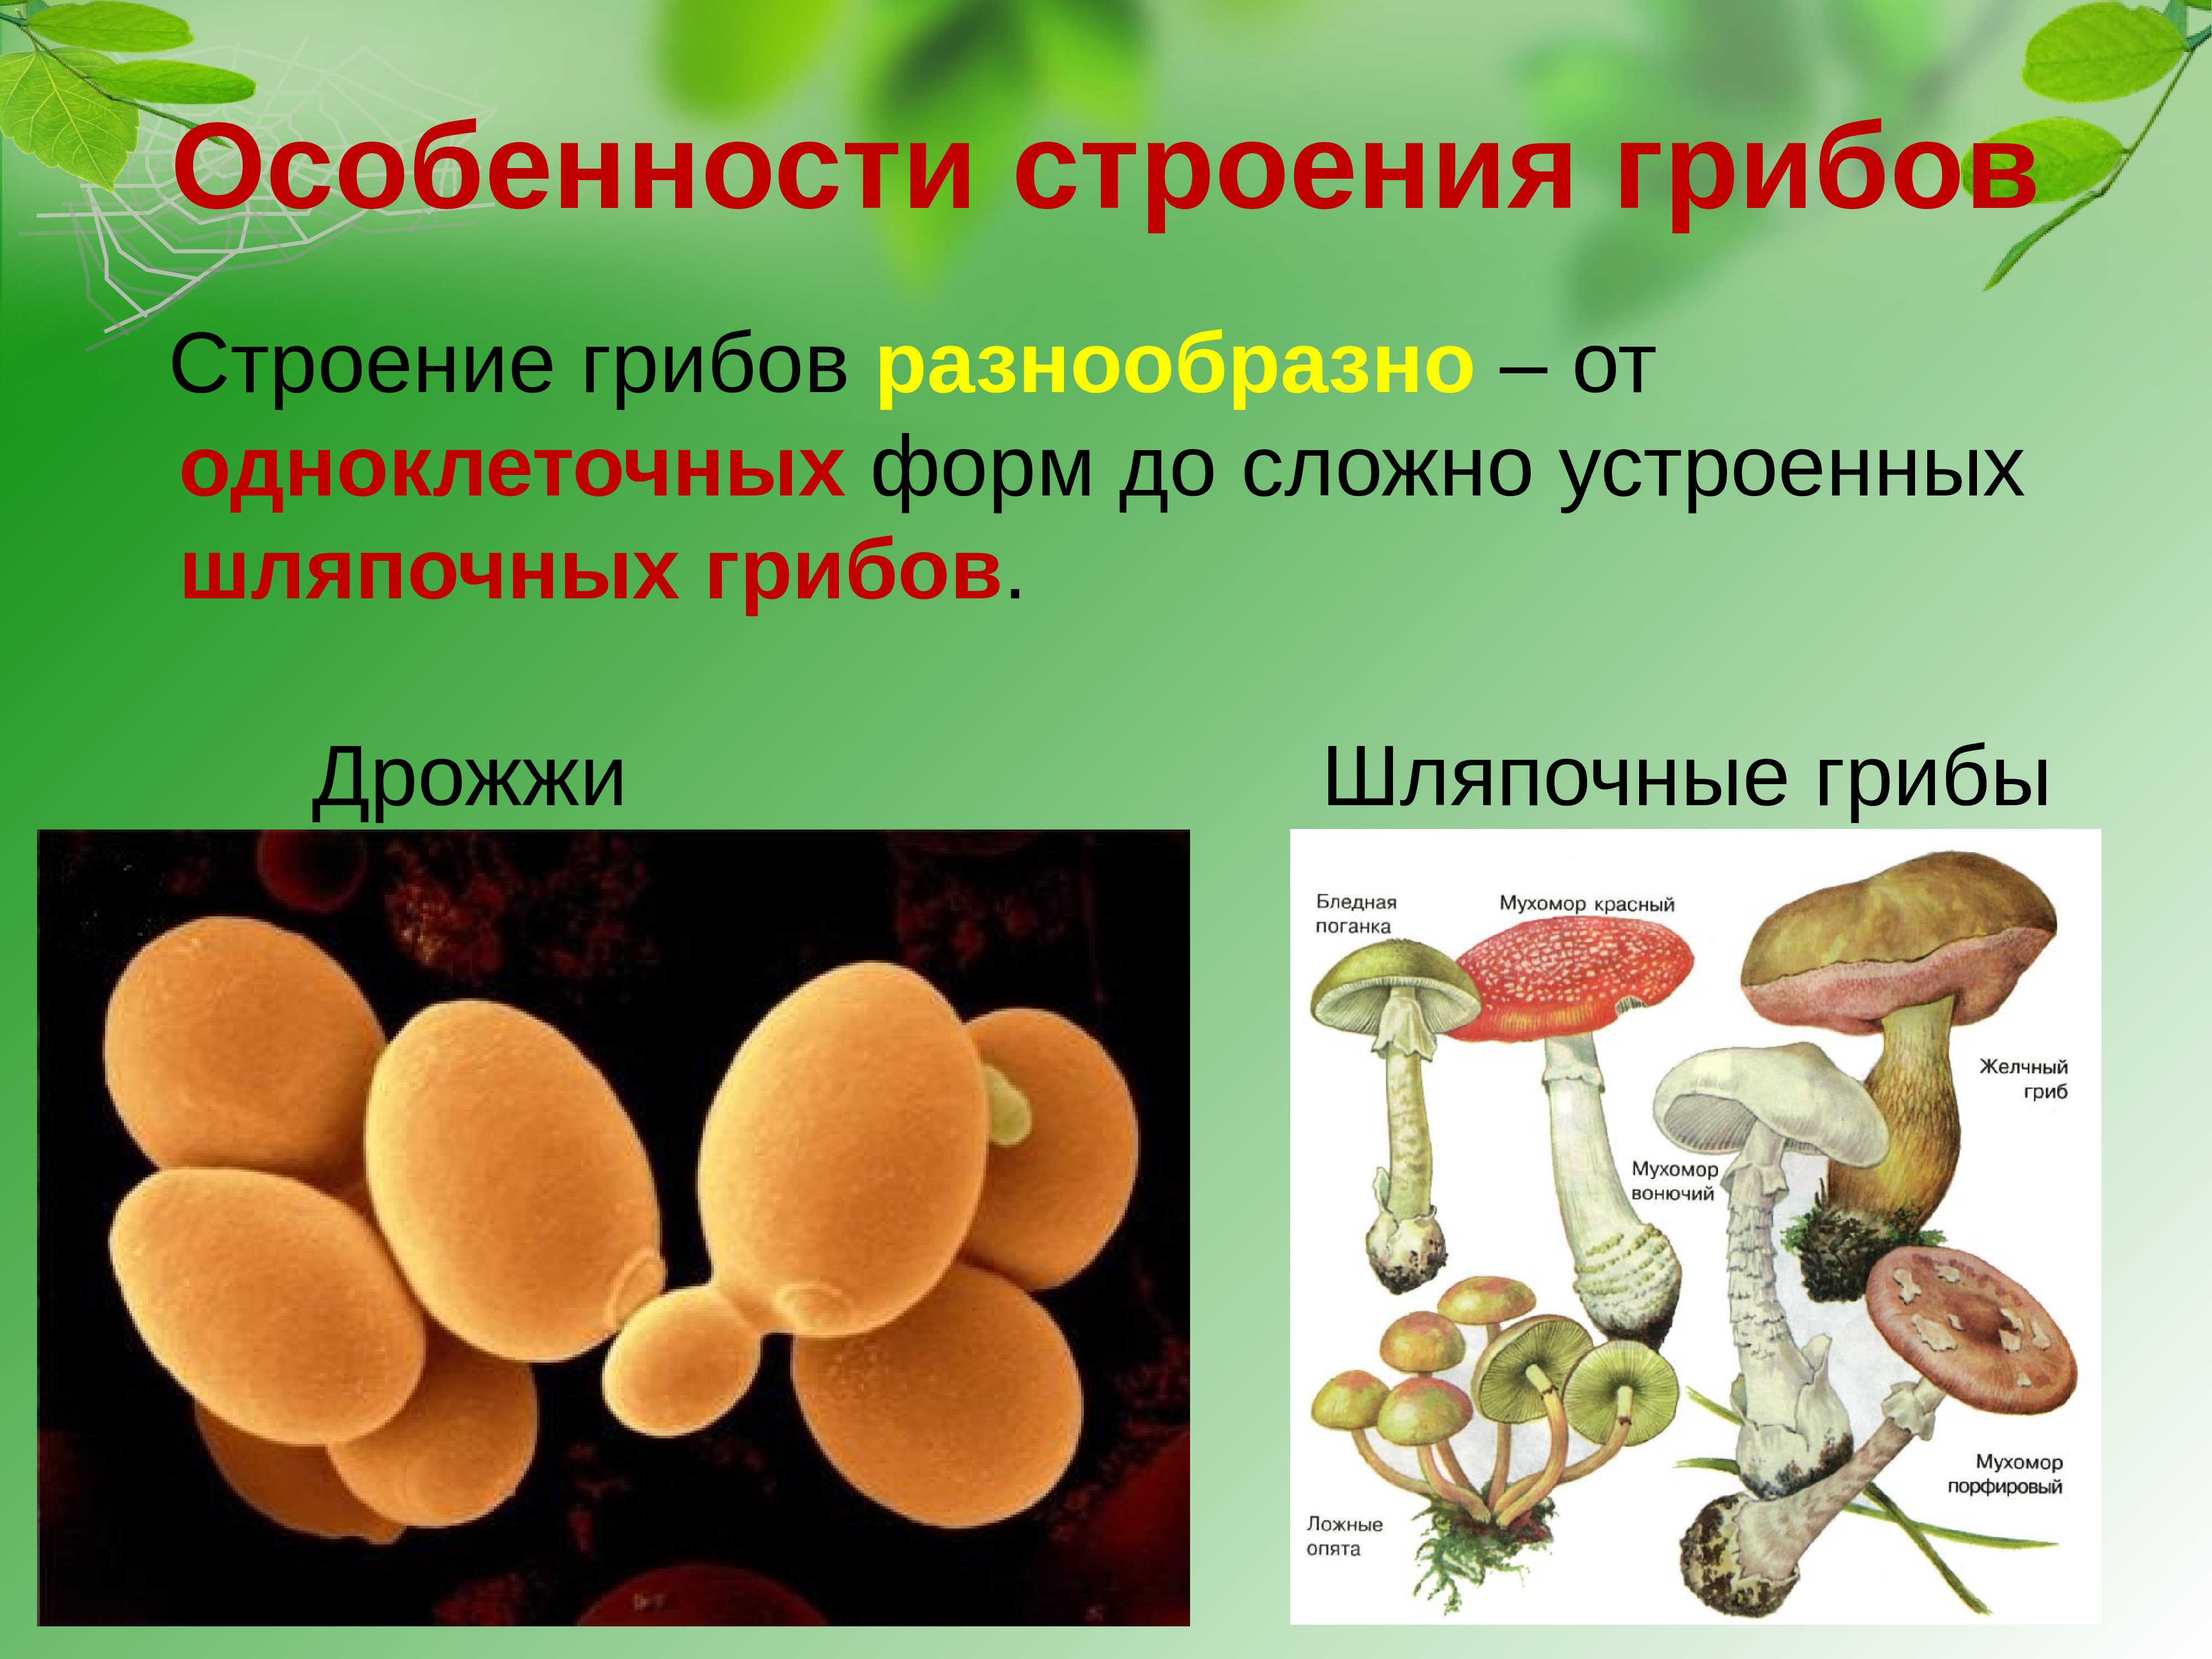 Гриб характеризуется. Строение одноклеточных грибов дрожжи. Строение грибов грибов. Грибы строение шляпочных грибов. Царство грибов одноклеточные (дрожжи).